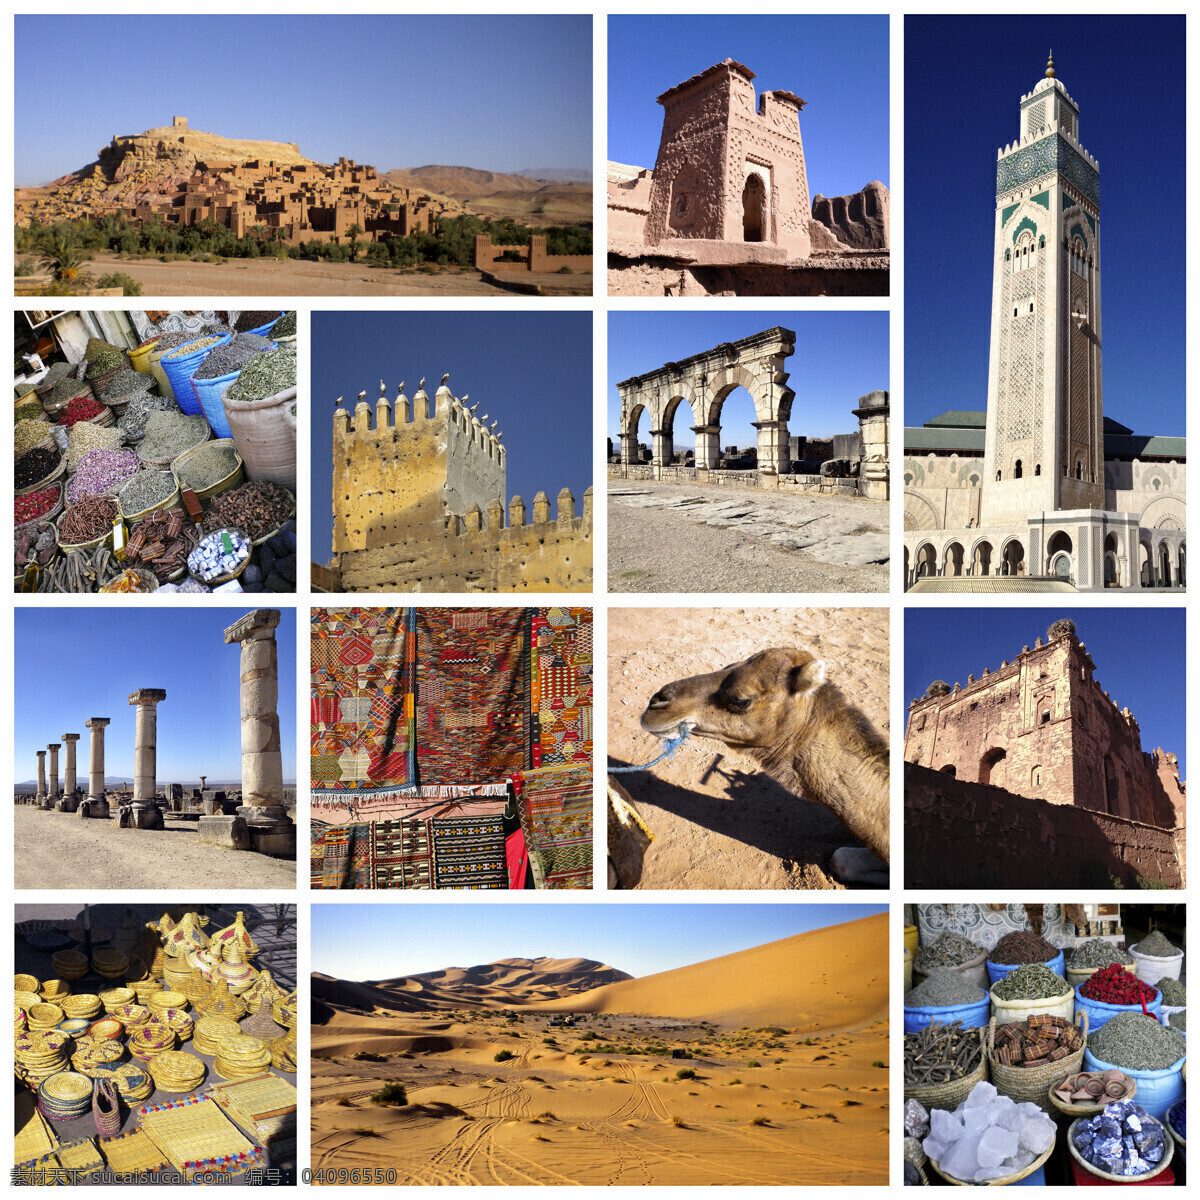 摩洛哥 建筑 景观 动物 饰品 中东 地域建筑 文化 信仰 摩洛哥建筑 名胜古迹 自然景观 城市风光 环境家居